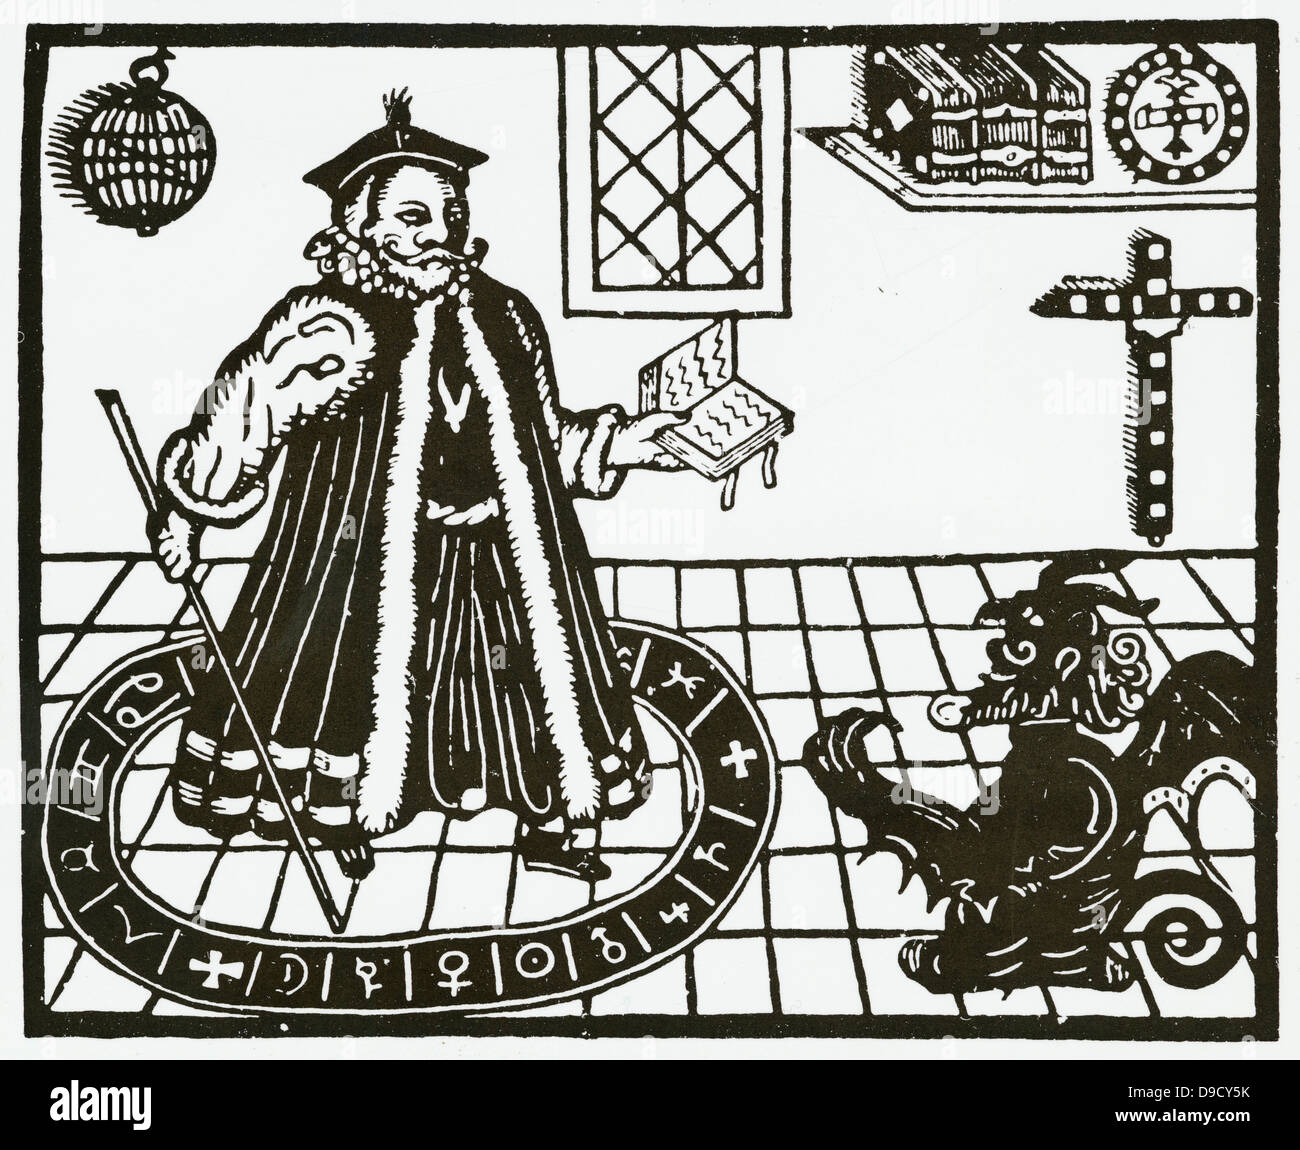 Mephistopheles: 28,18 Doktor Faustus, aus einer 1631 Ausgabe der tragische Historie von D. Faust das Spiel von Christopher Marlowe, in der Faust seine Seele dem Teufel verkauft, im Austausch für Wissen und Macht. Stockfoto